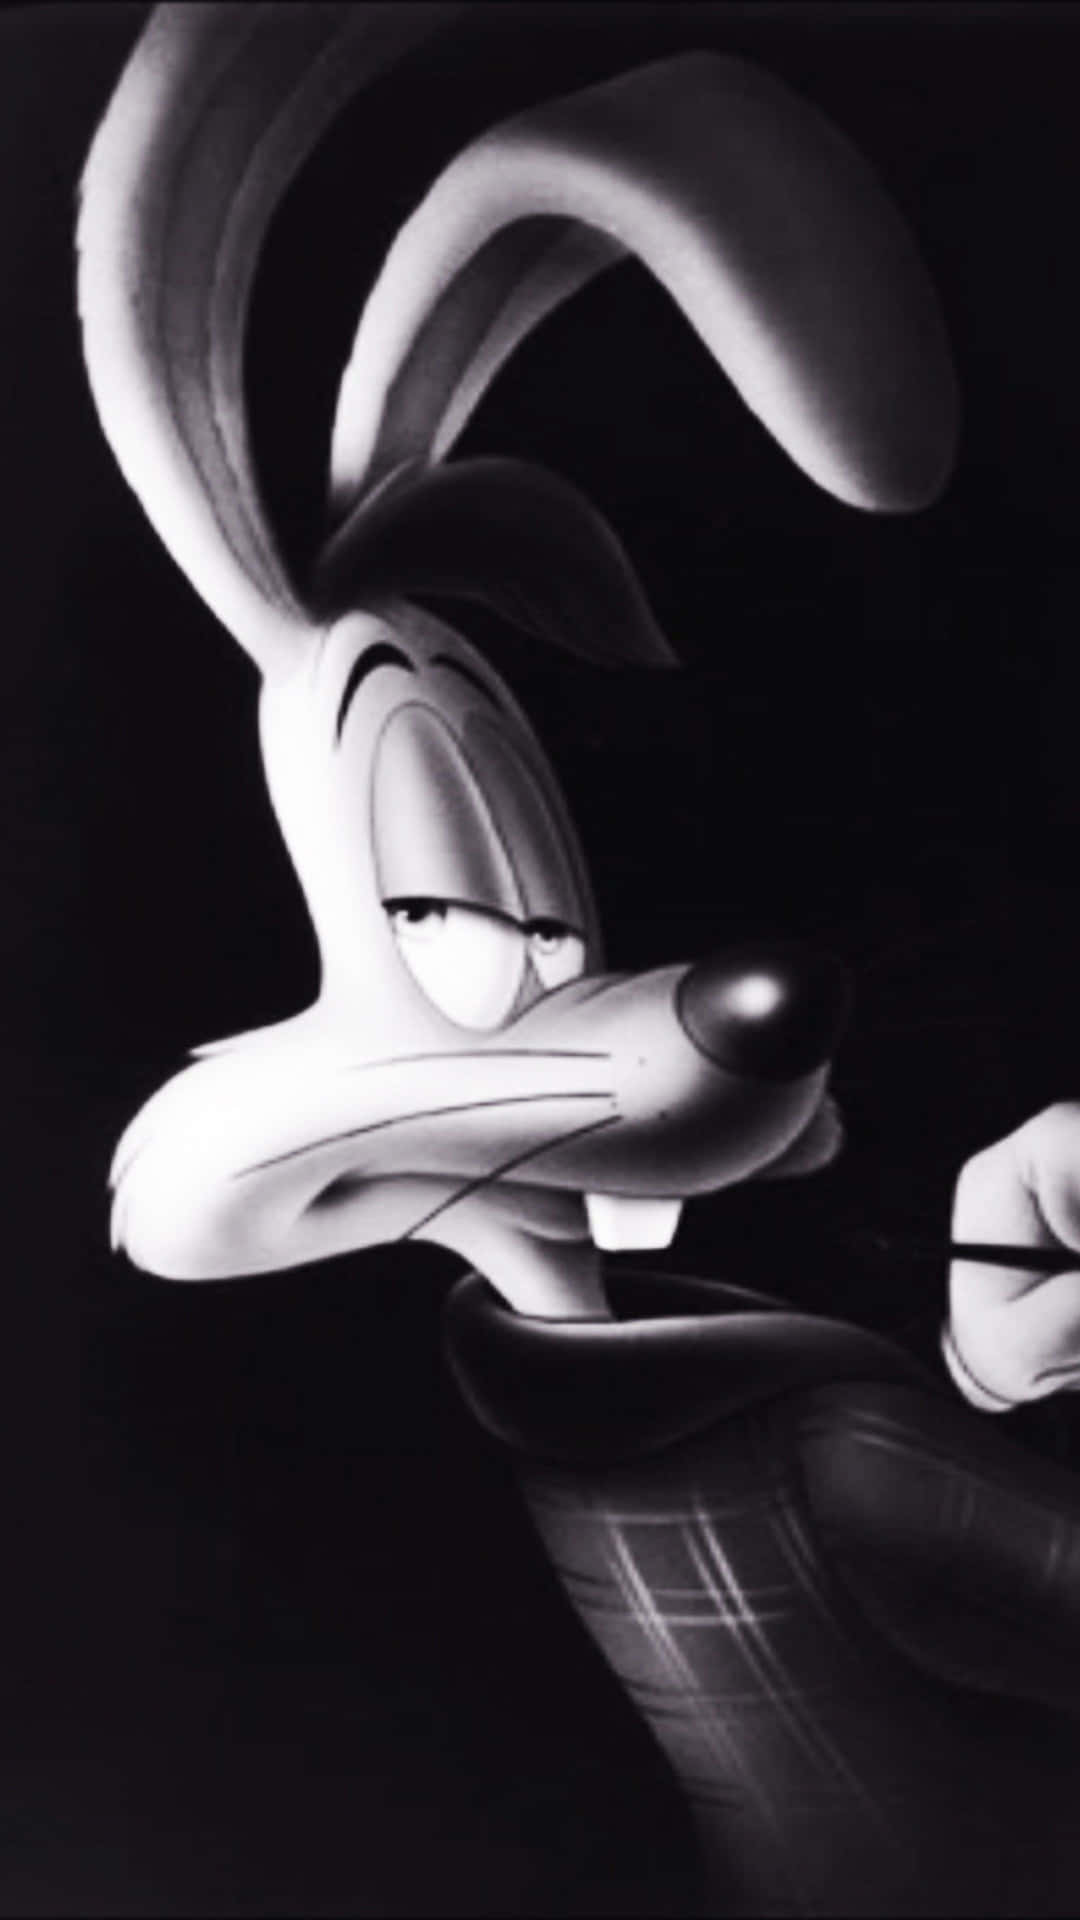 Roger Rabbit Monochrome Portrait